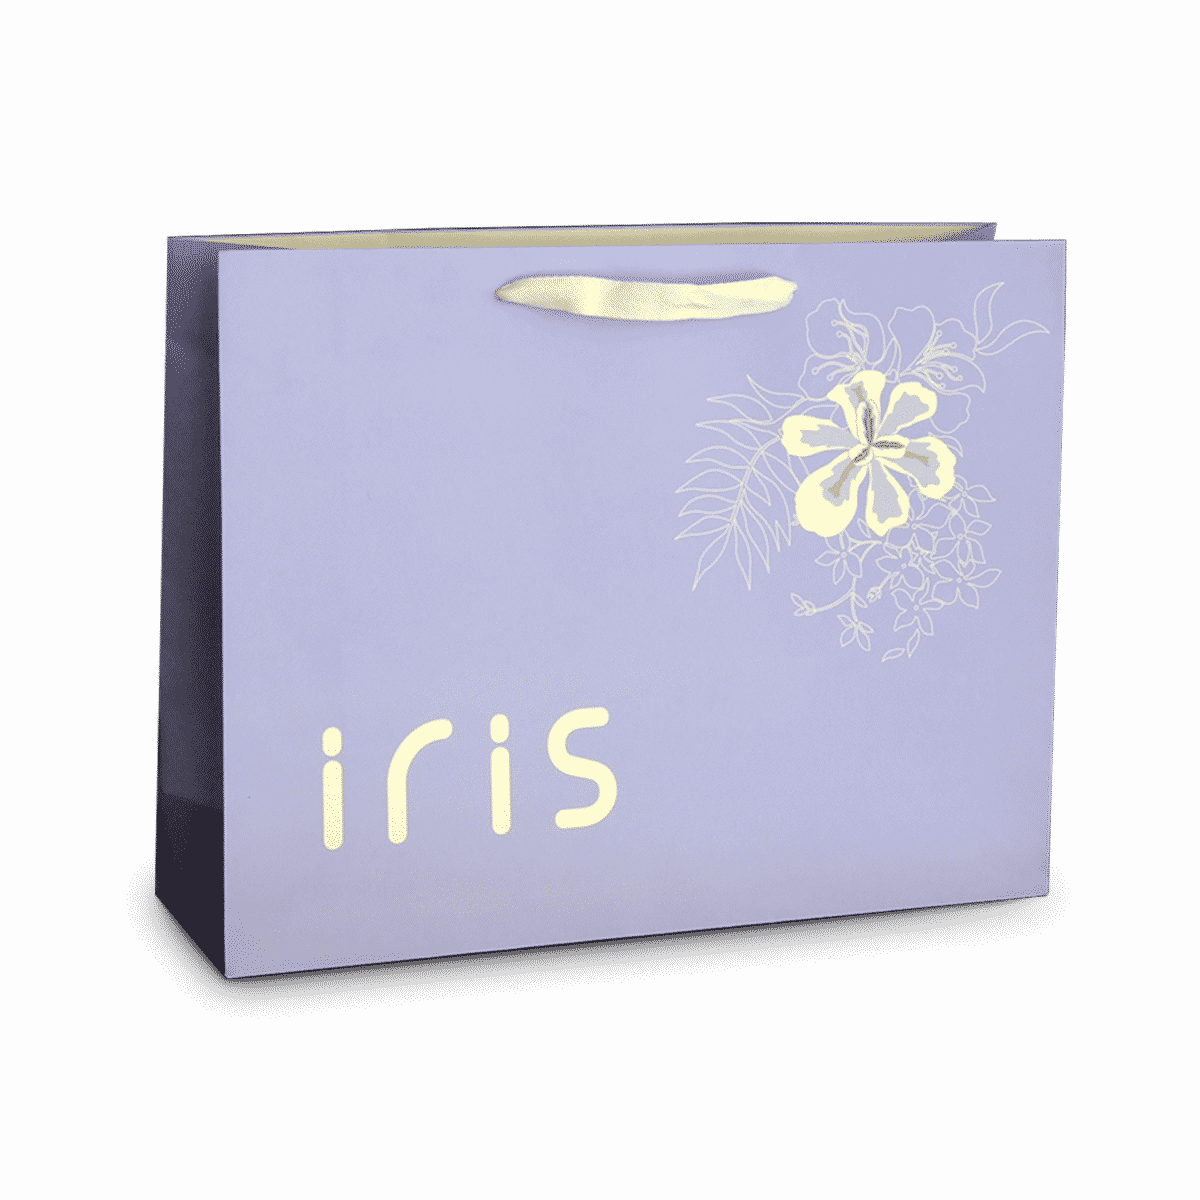 Iris 1200x1200 cut out 1200x1200 1 - خانه